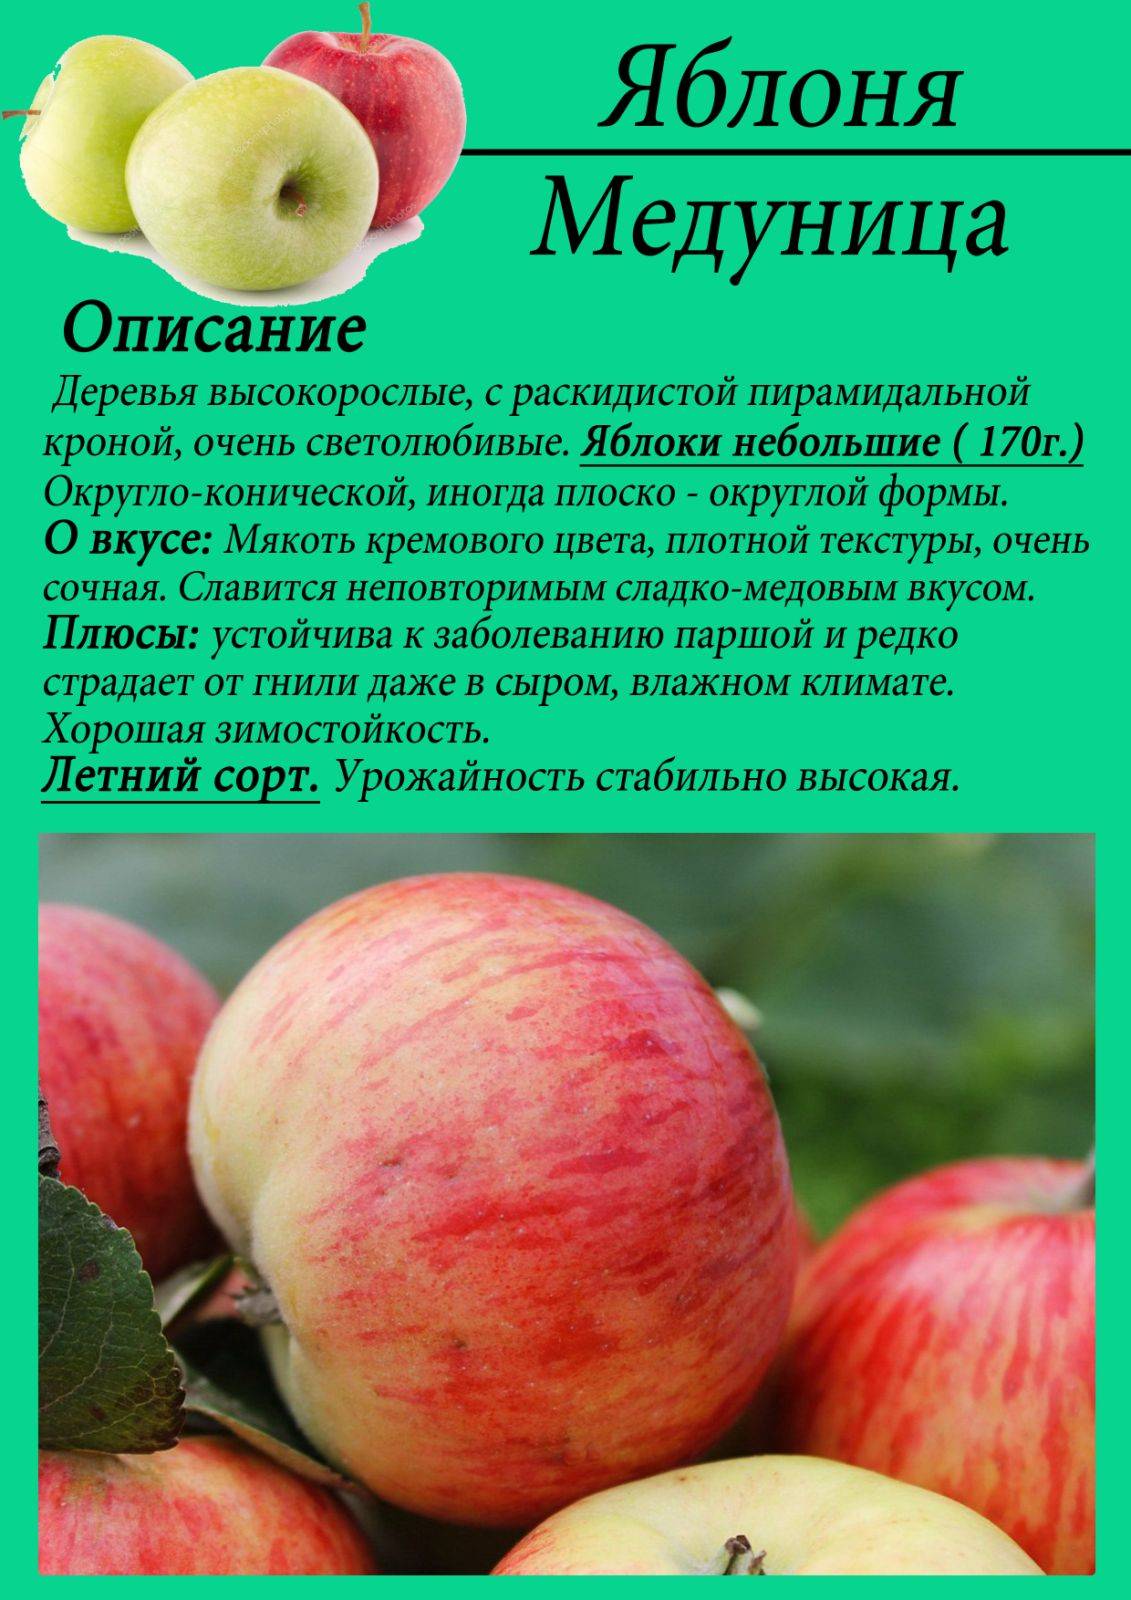 Сорт яблок медовая фото и описание